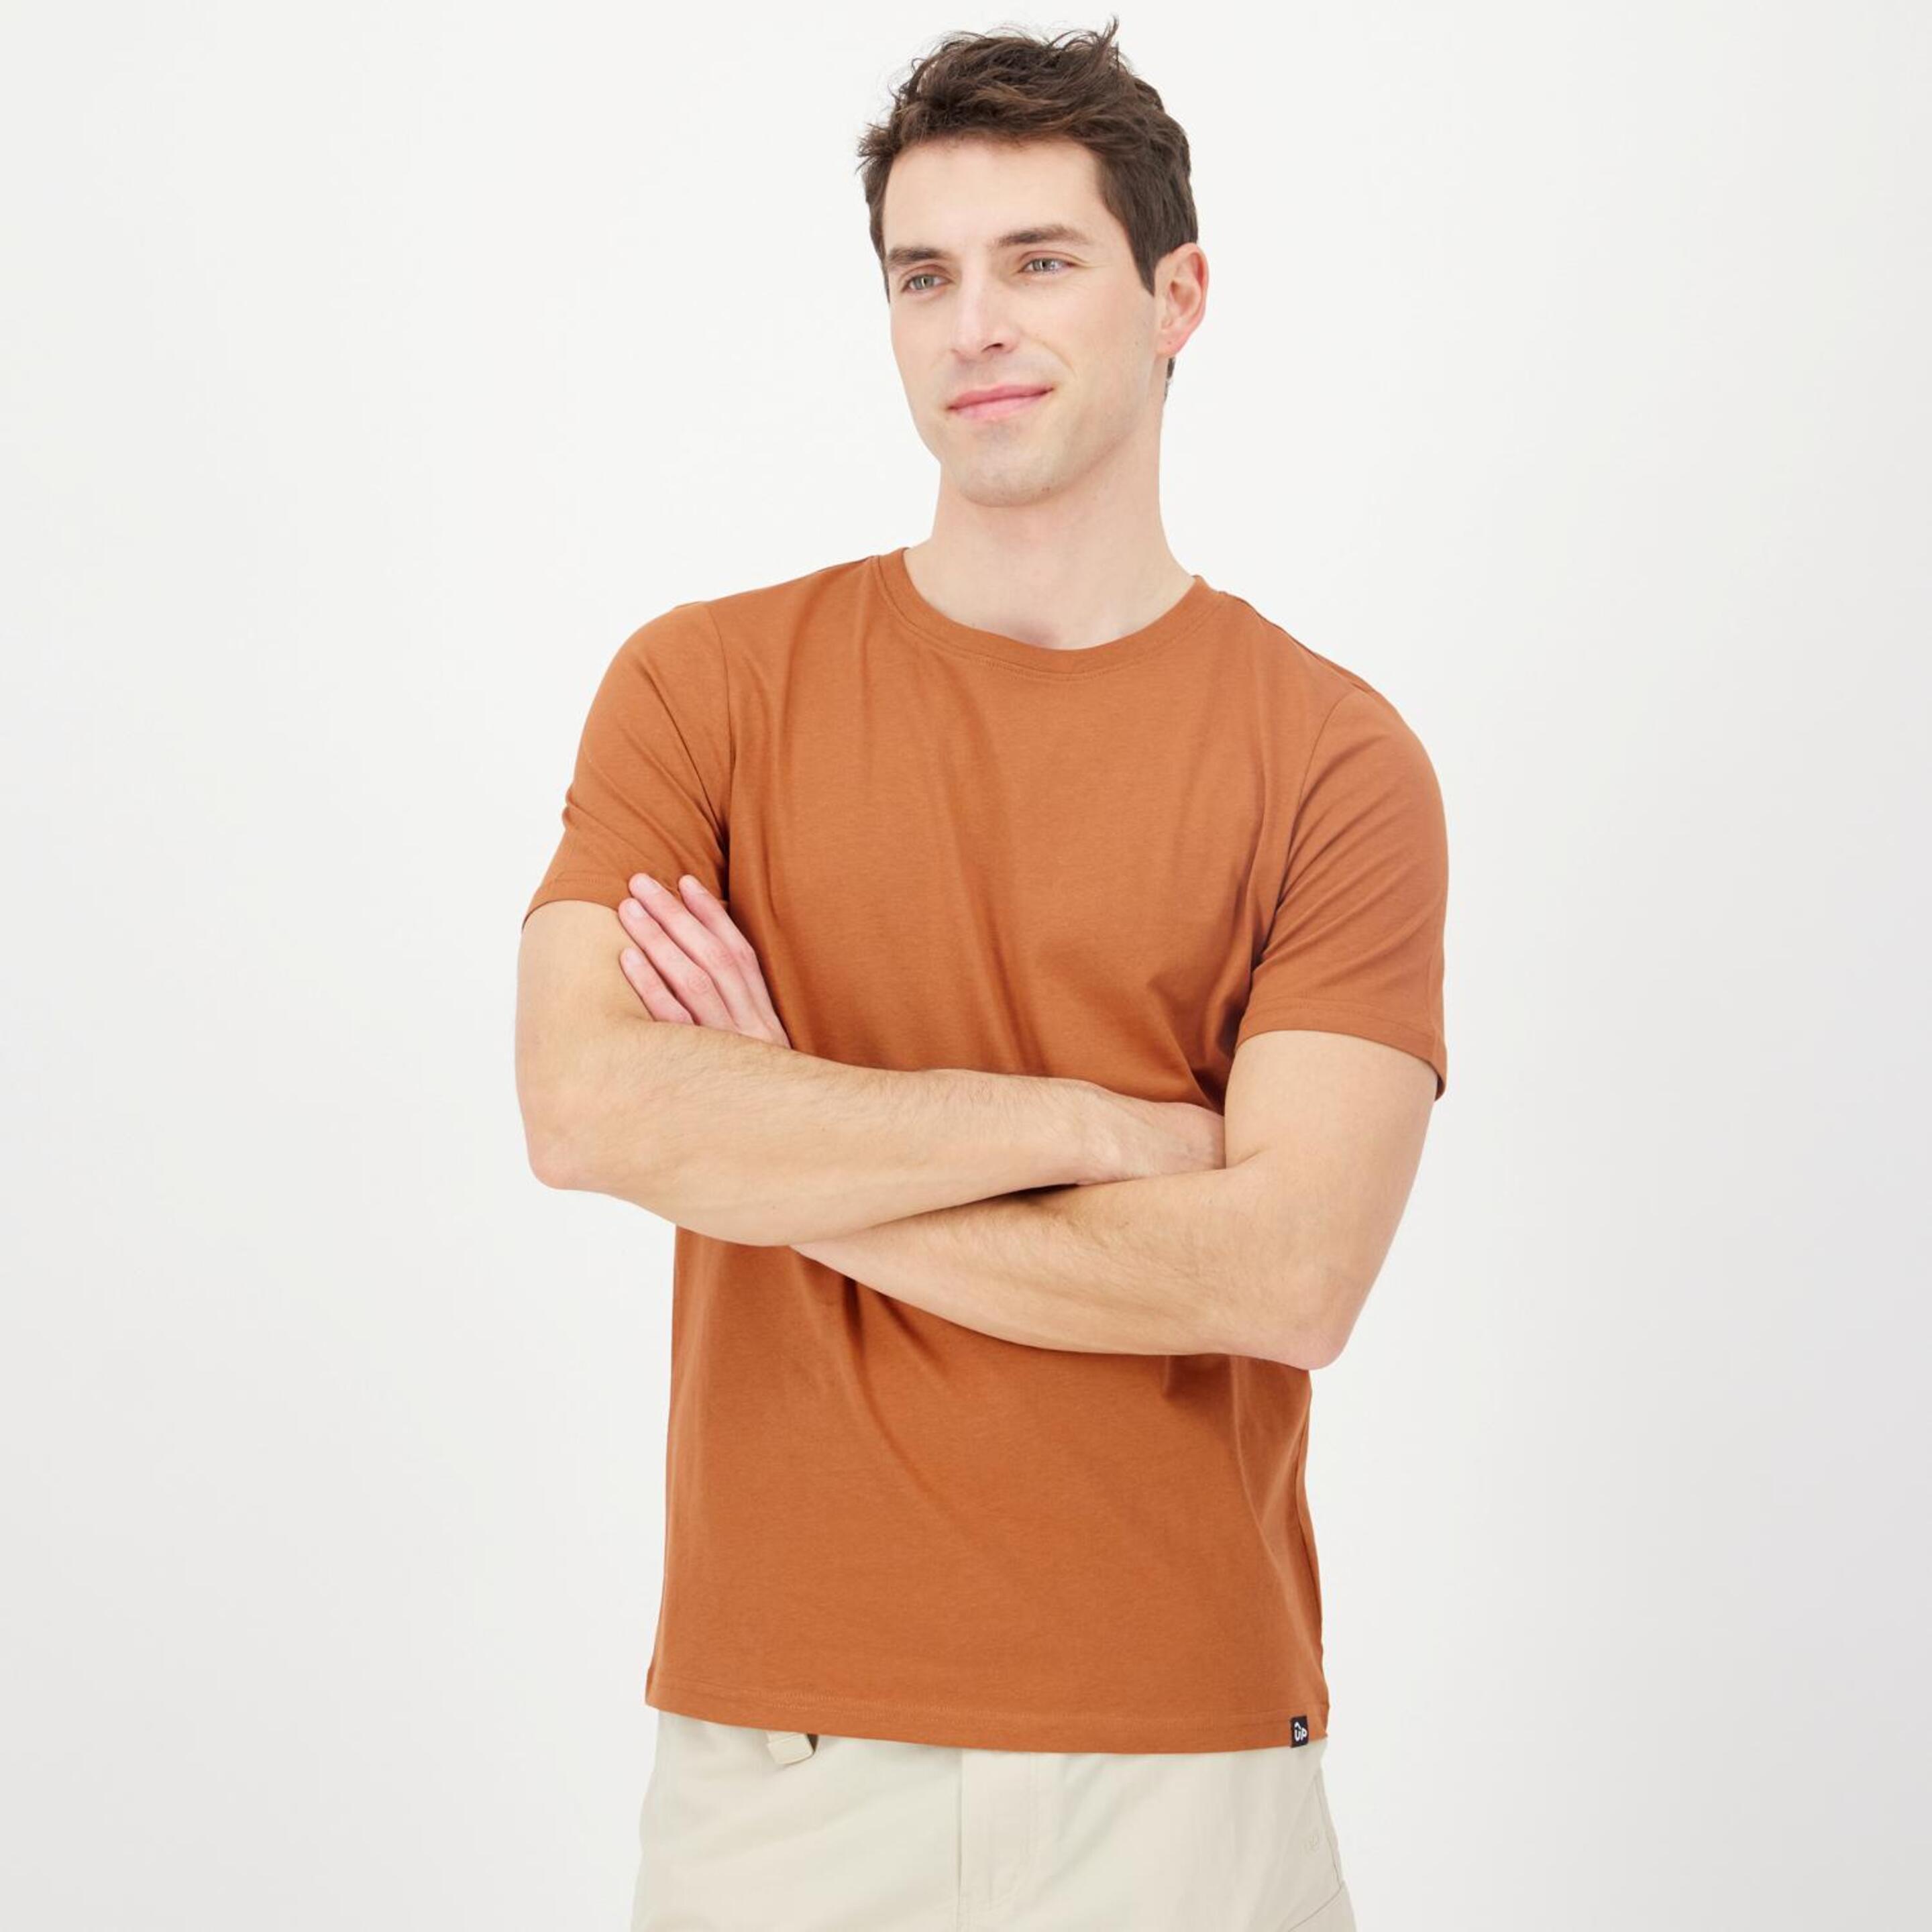 Camiseta Up - marron - Camiseta Hombre